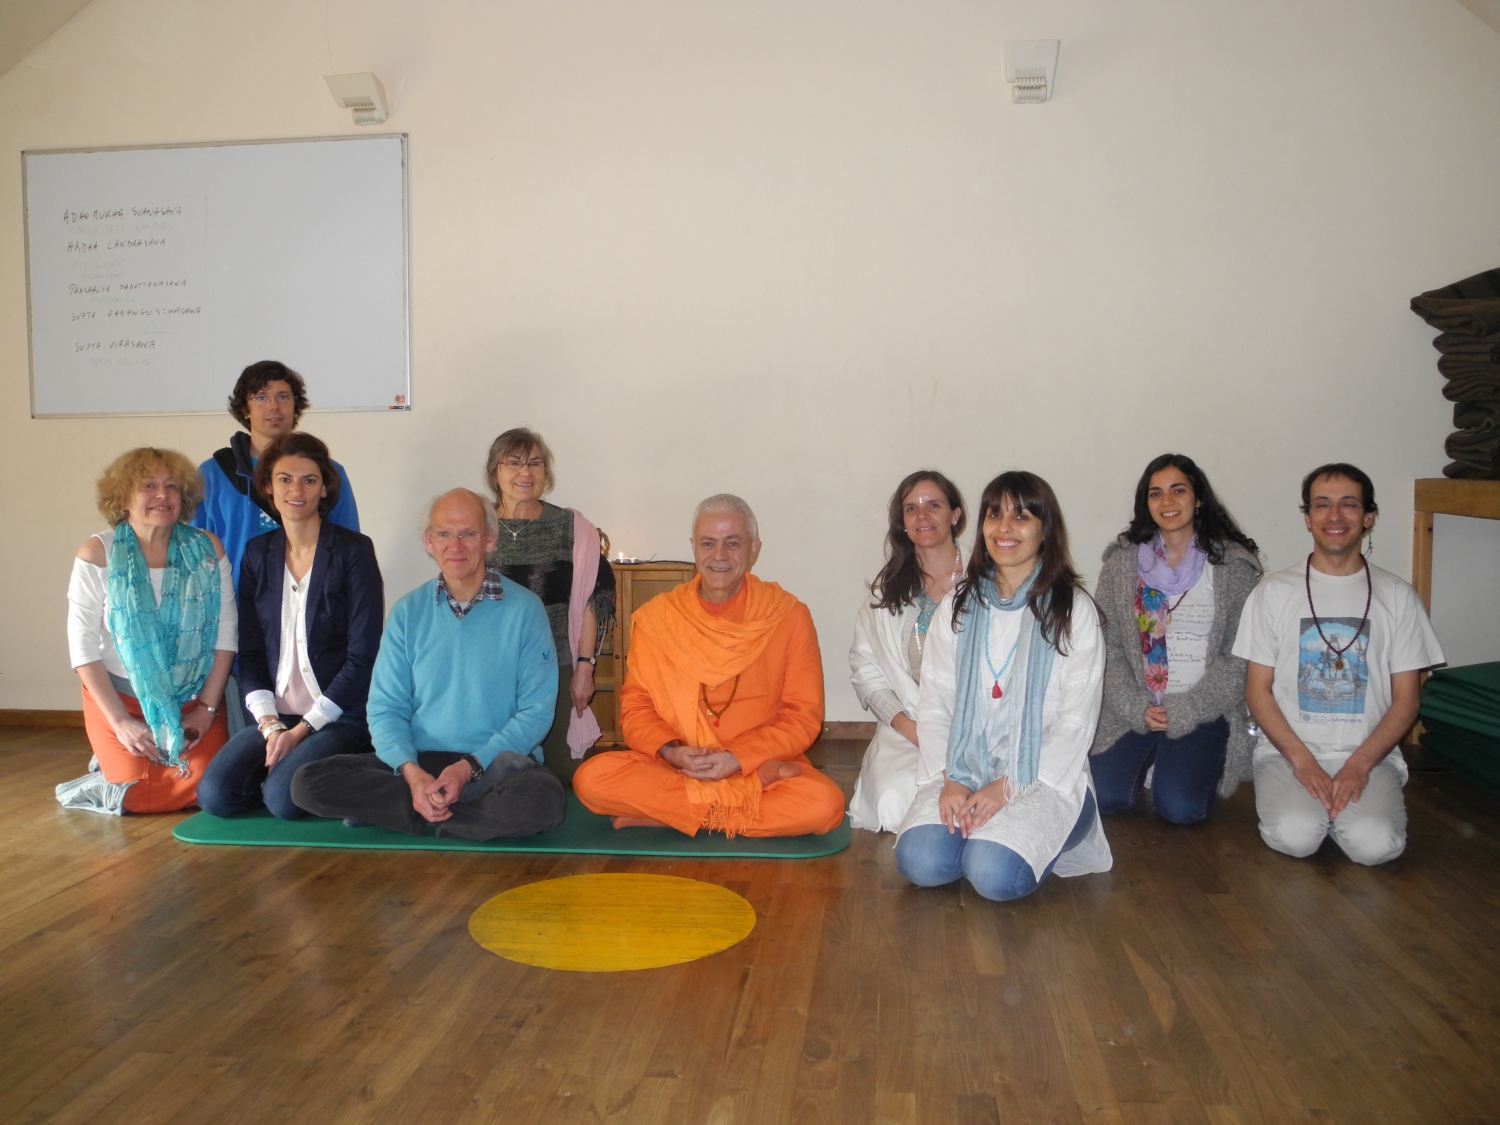 Encuentro de H.H. Jagat Guru Amrta Sūryānanda Mahā Rāja con el Maestro Thierry Van Brabant - Centre Samtosha, Jodoigne, Bélgica - 2012, marzo